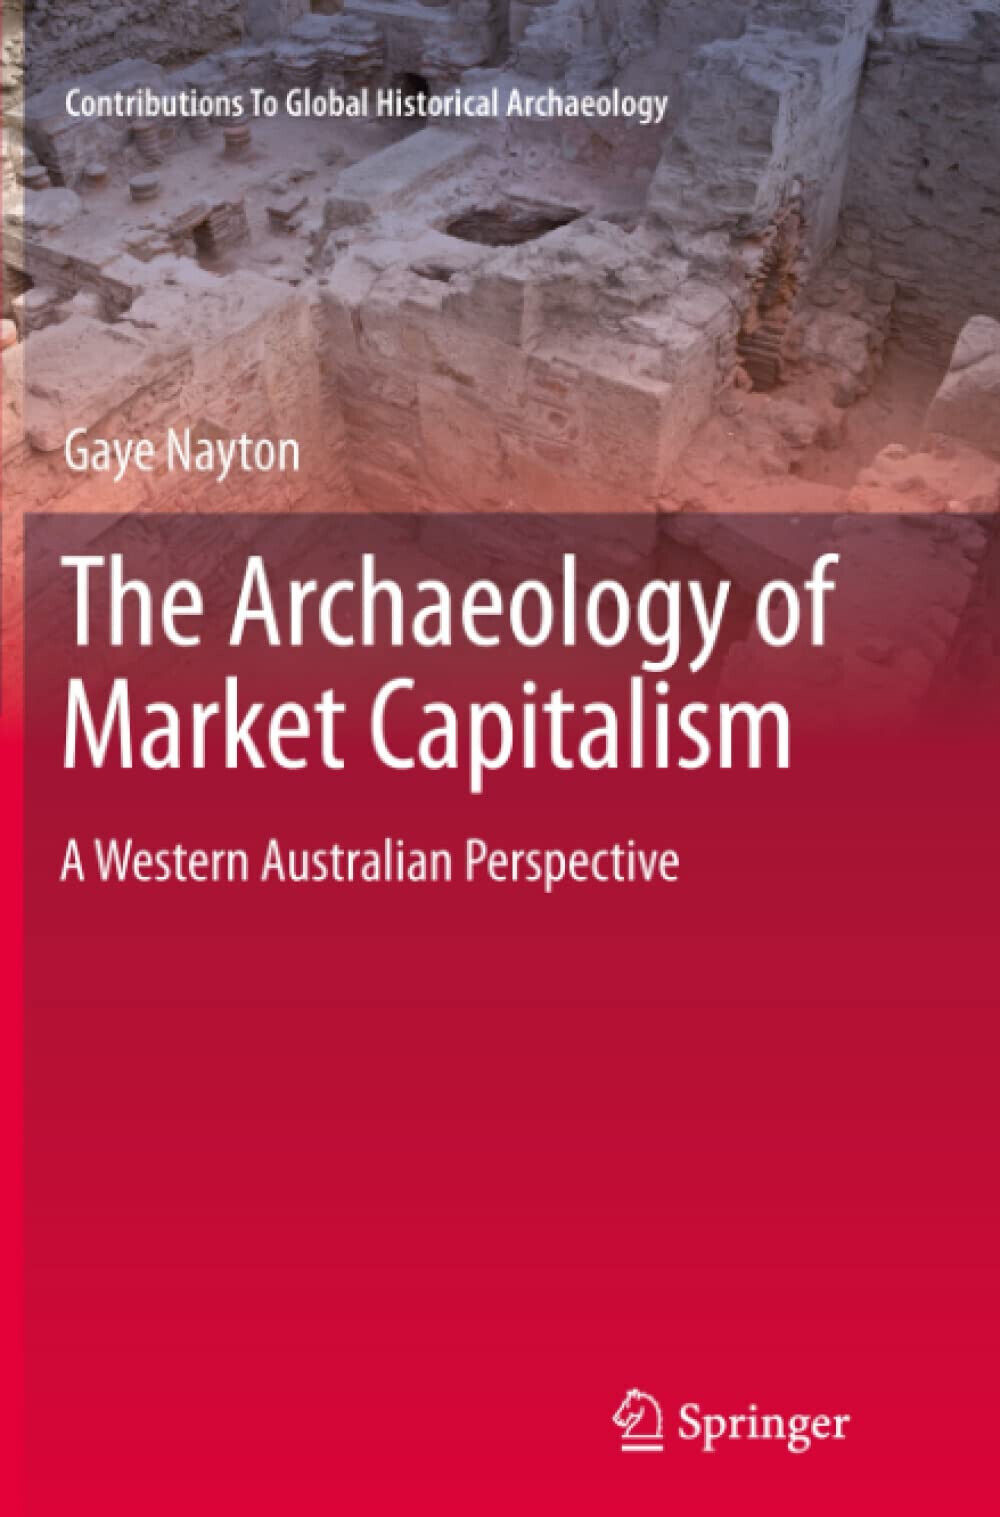 The Archaeology of Market Capitalism - Gaye Nayton - Springer, 2013